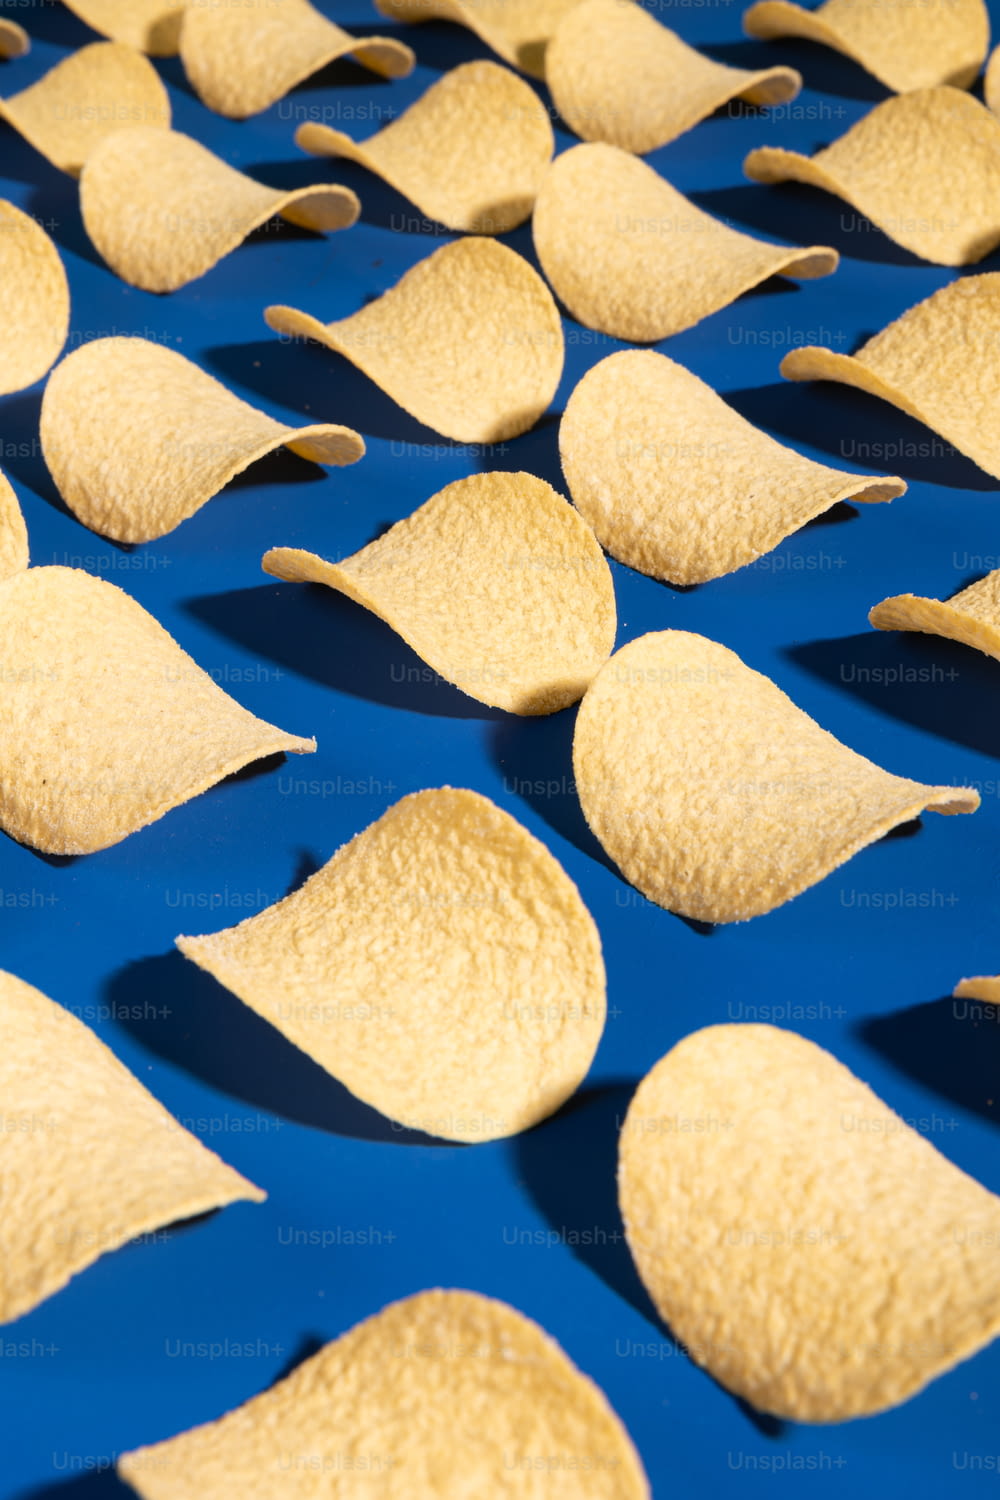 Le tortilla chips sono disposte su una superficie blu